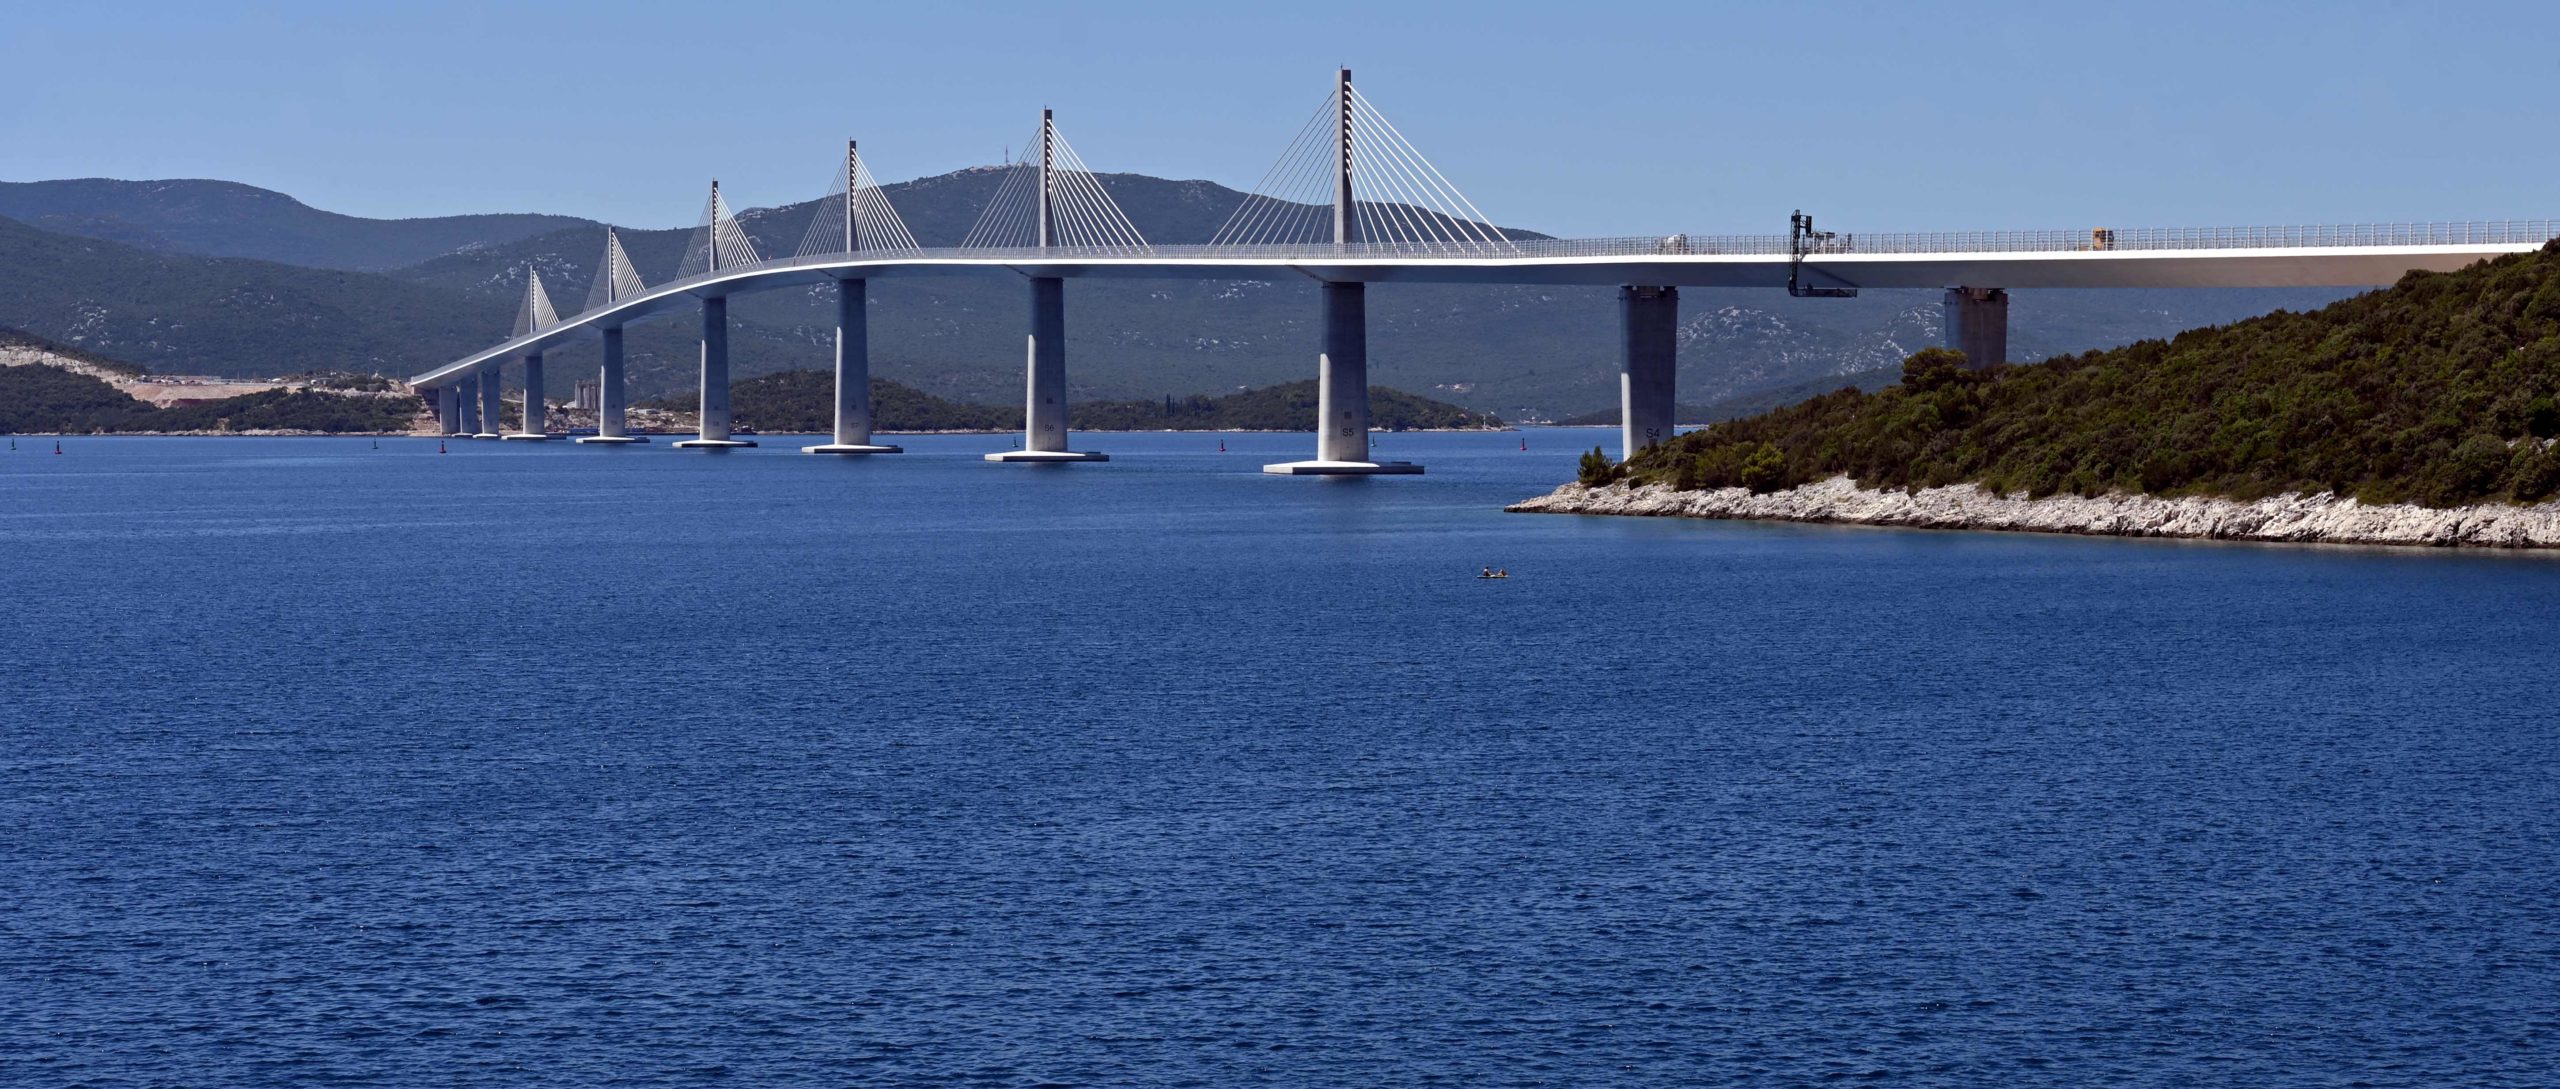 La Croatie n'est plus coupée en deux grâce à un pont de 2,4 km